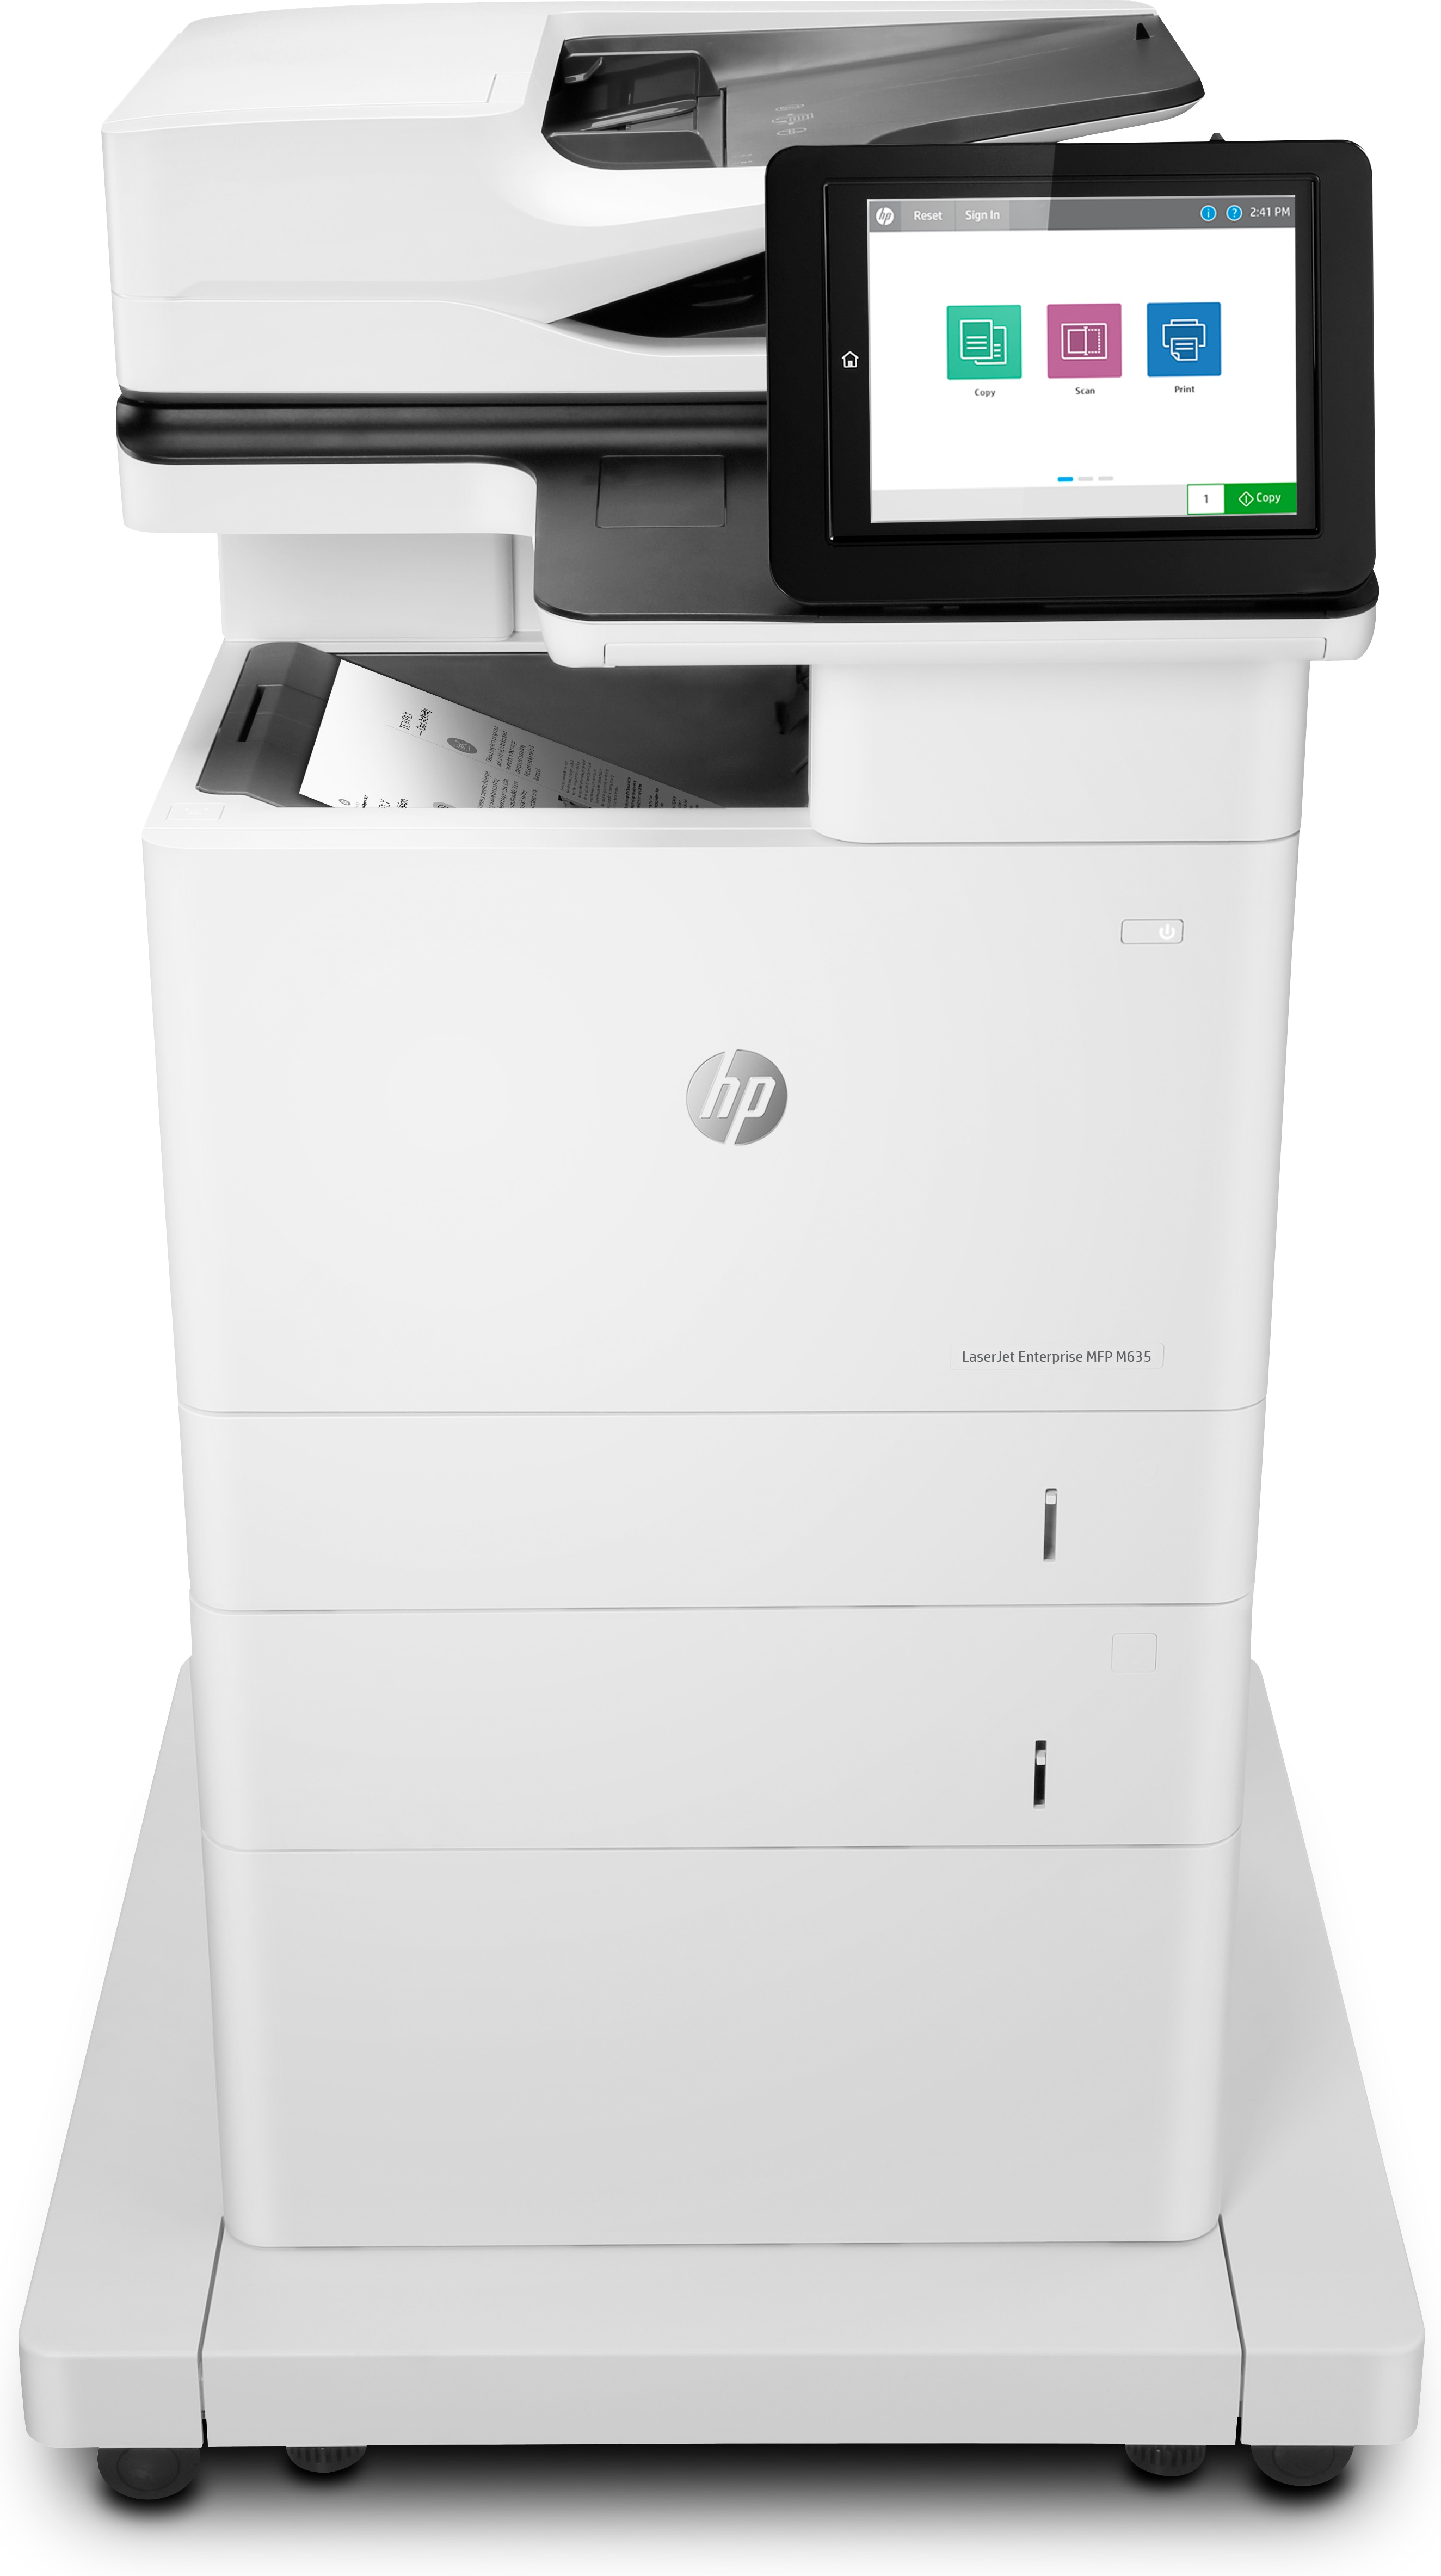 HP LaserJet Enterprise MFP M635fht, Skriv ut, kopiera, skanna, fax, Utskrift från USB-port på framsidan; Skanna till e-post/PDF; Dubbelsidig utskrift; ADF för 150 ark; Hög säkerhet